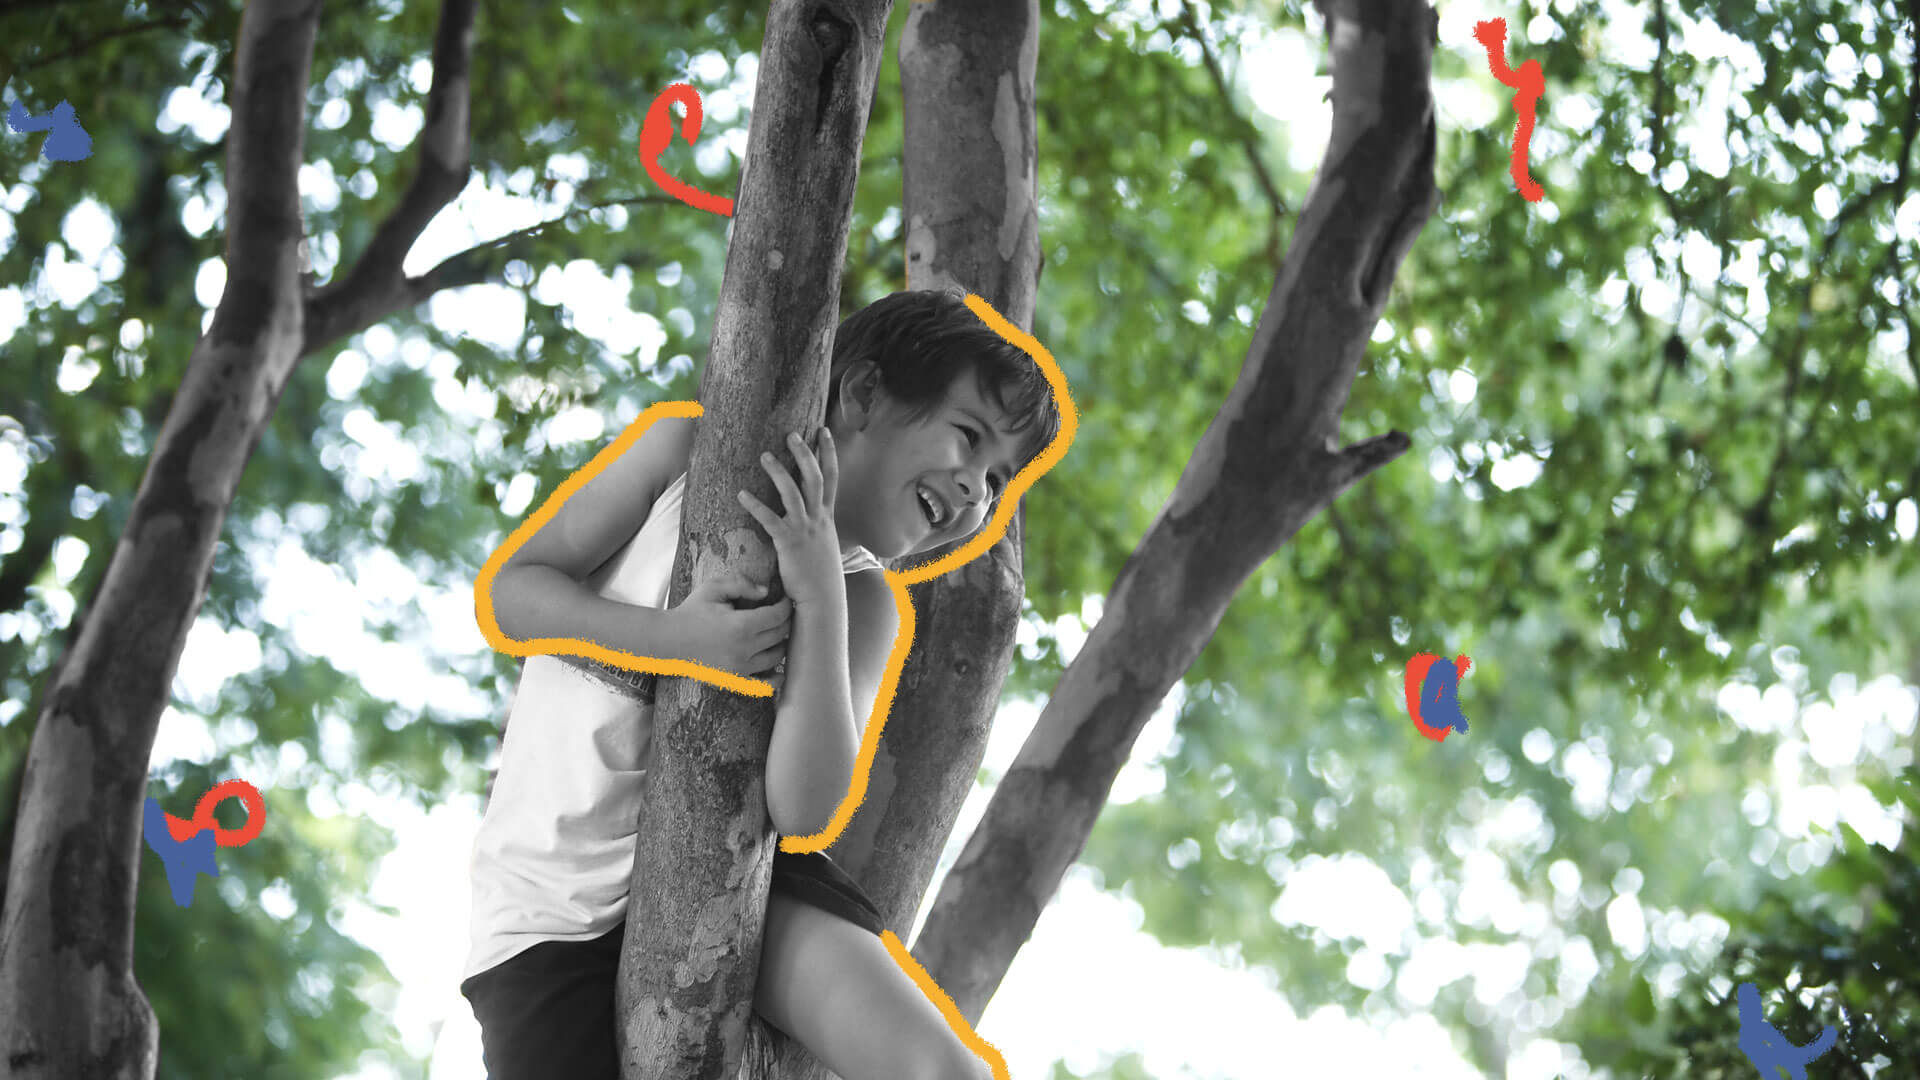 Menino abraça um tronco no alto de uma árvore e sorri. Ao fundo da foto podem ser vistas as folhas verdes de outras árvores, o que nos remete ao contato com a natureza.